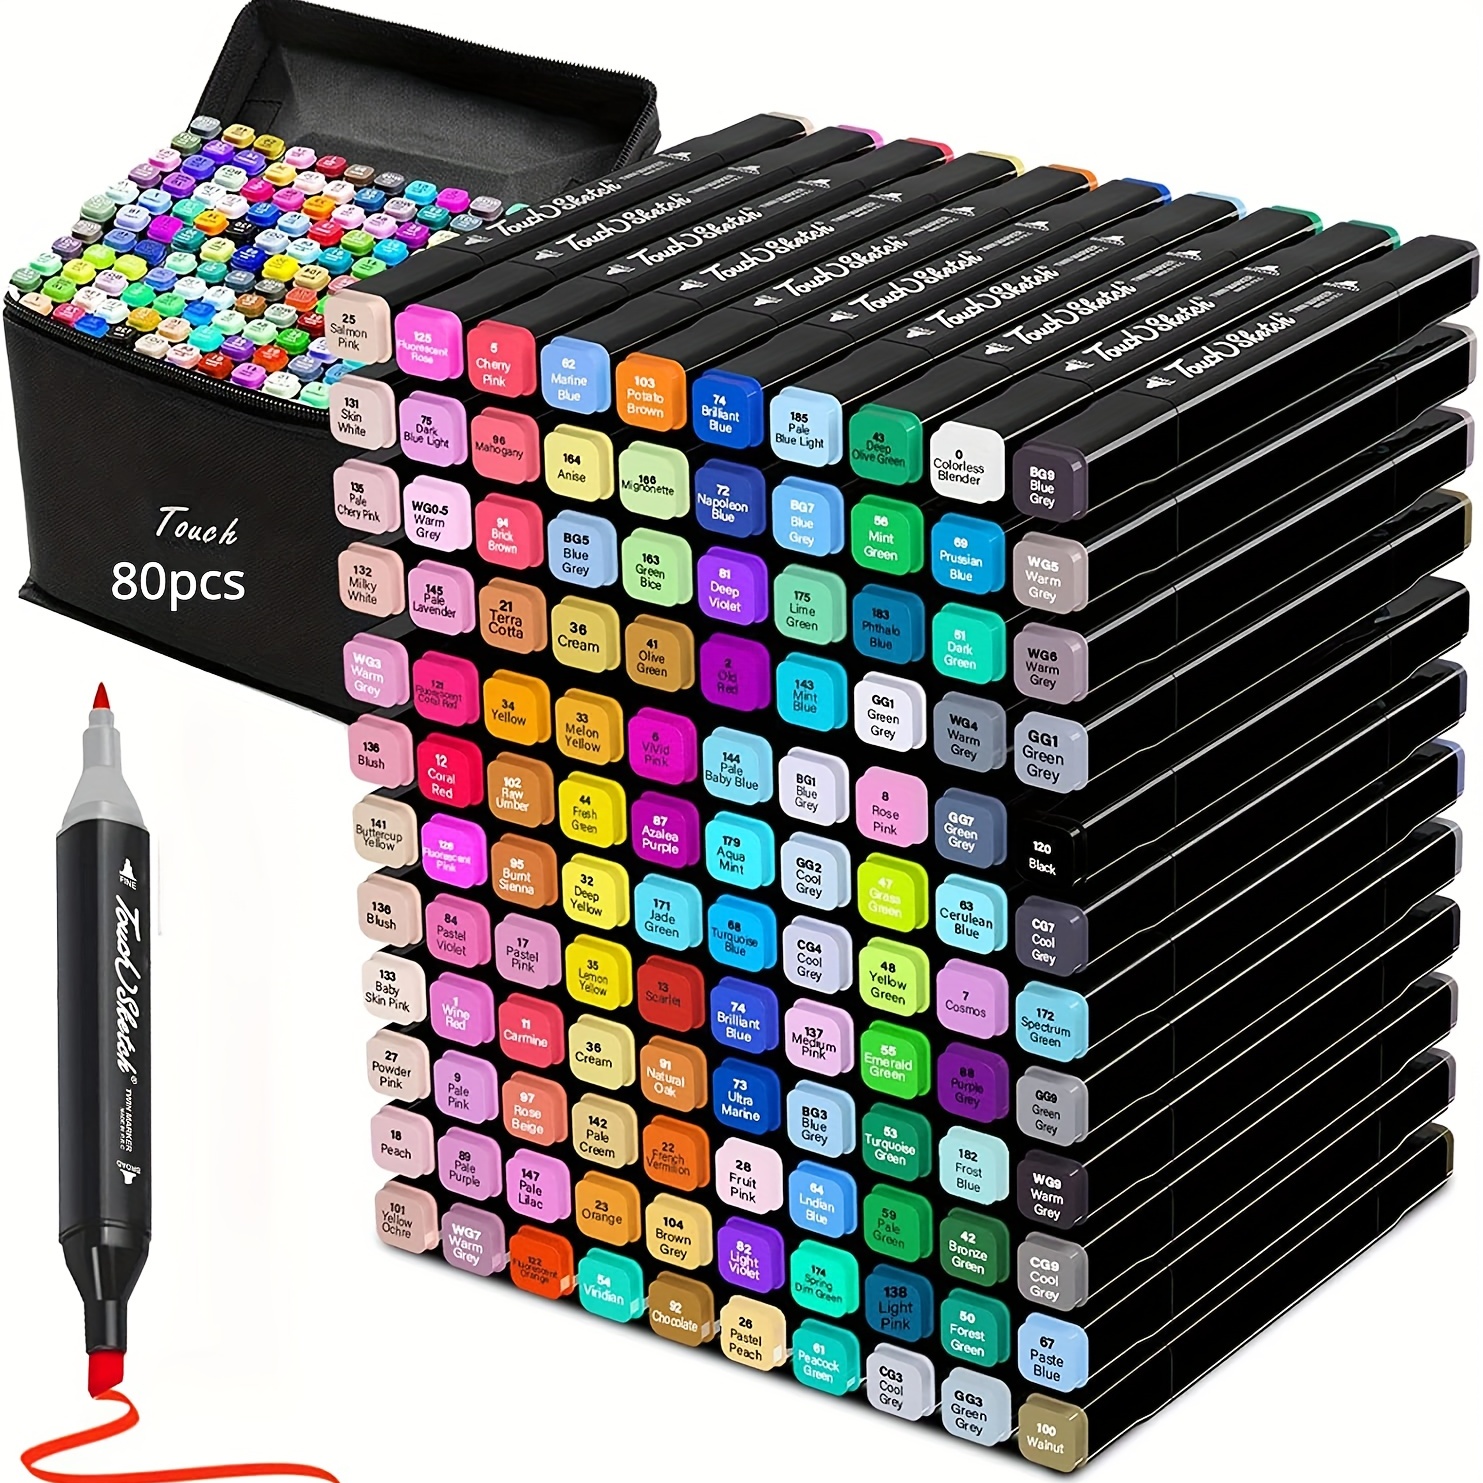 https://img.kwcdn.com/product/colors-alcohol-based-dual-tip-coloring-art-markers/d69d2f15w98k18-b9dfc12b/open/2023-06-27/1687875599318-0de92aec9e674fb39f93894dab9739ef-goods.jpeg